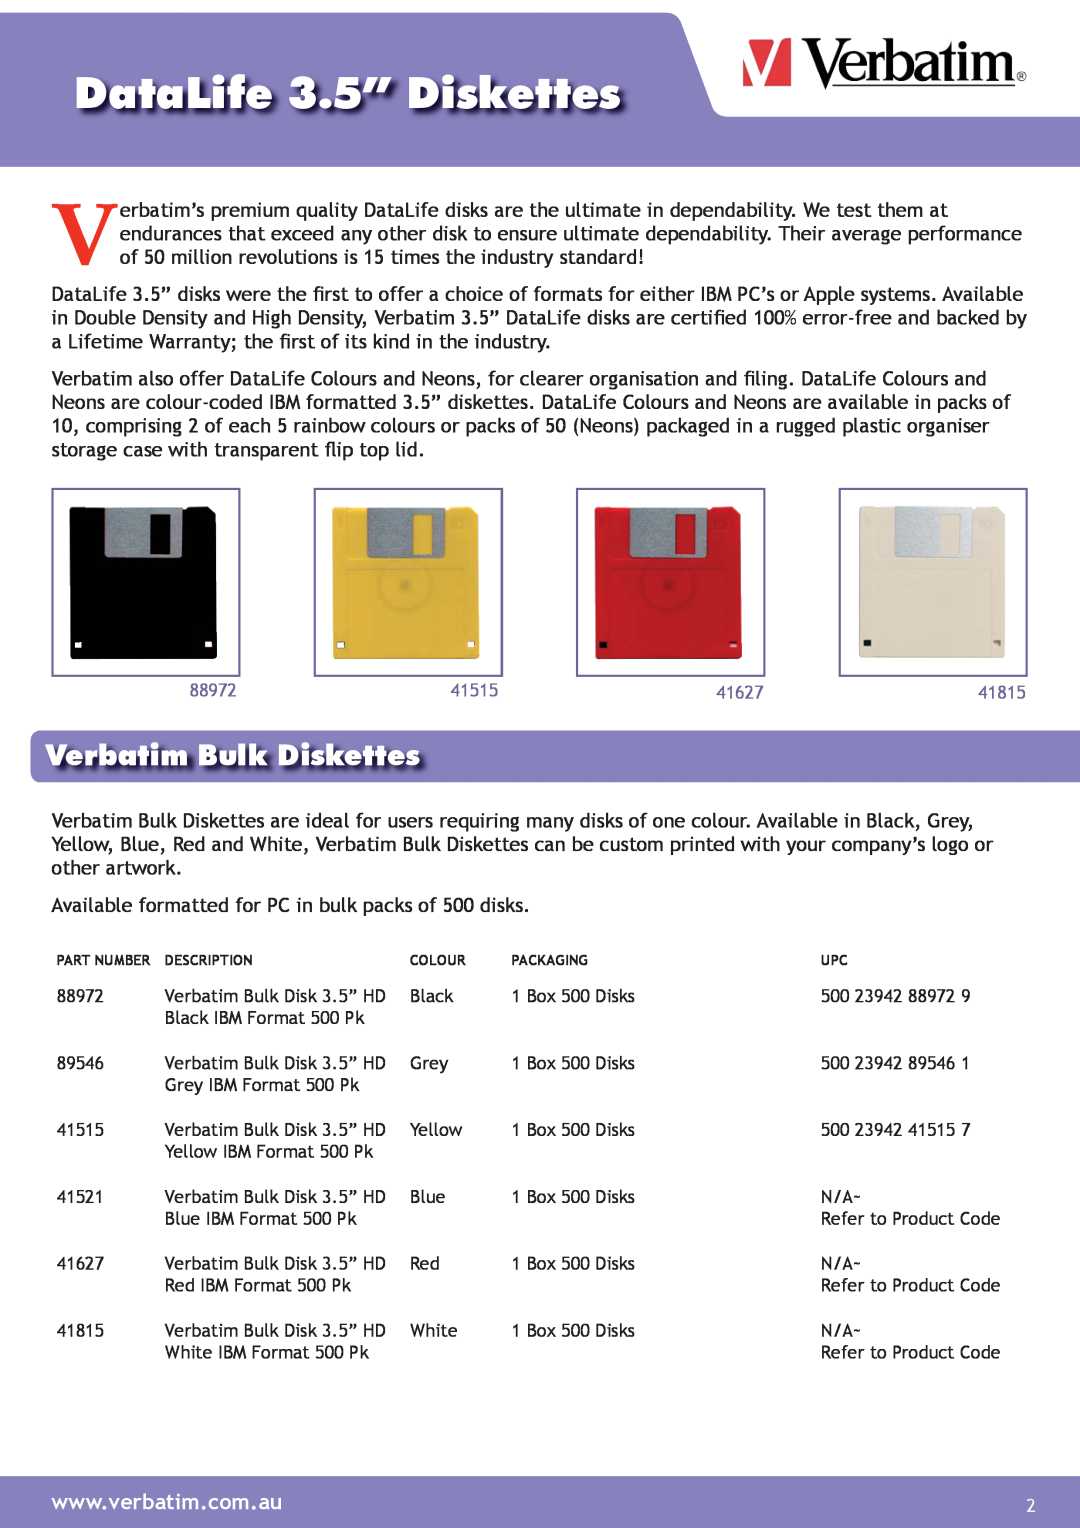 Verbatim Datalife 3.5" Diskette manual DataLife 3.5” Diskettes, Verbatim Bulk Diskettes 